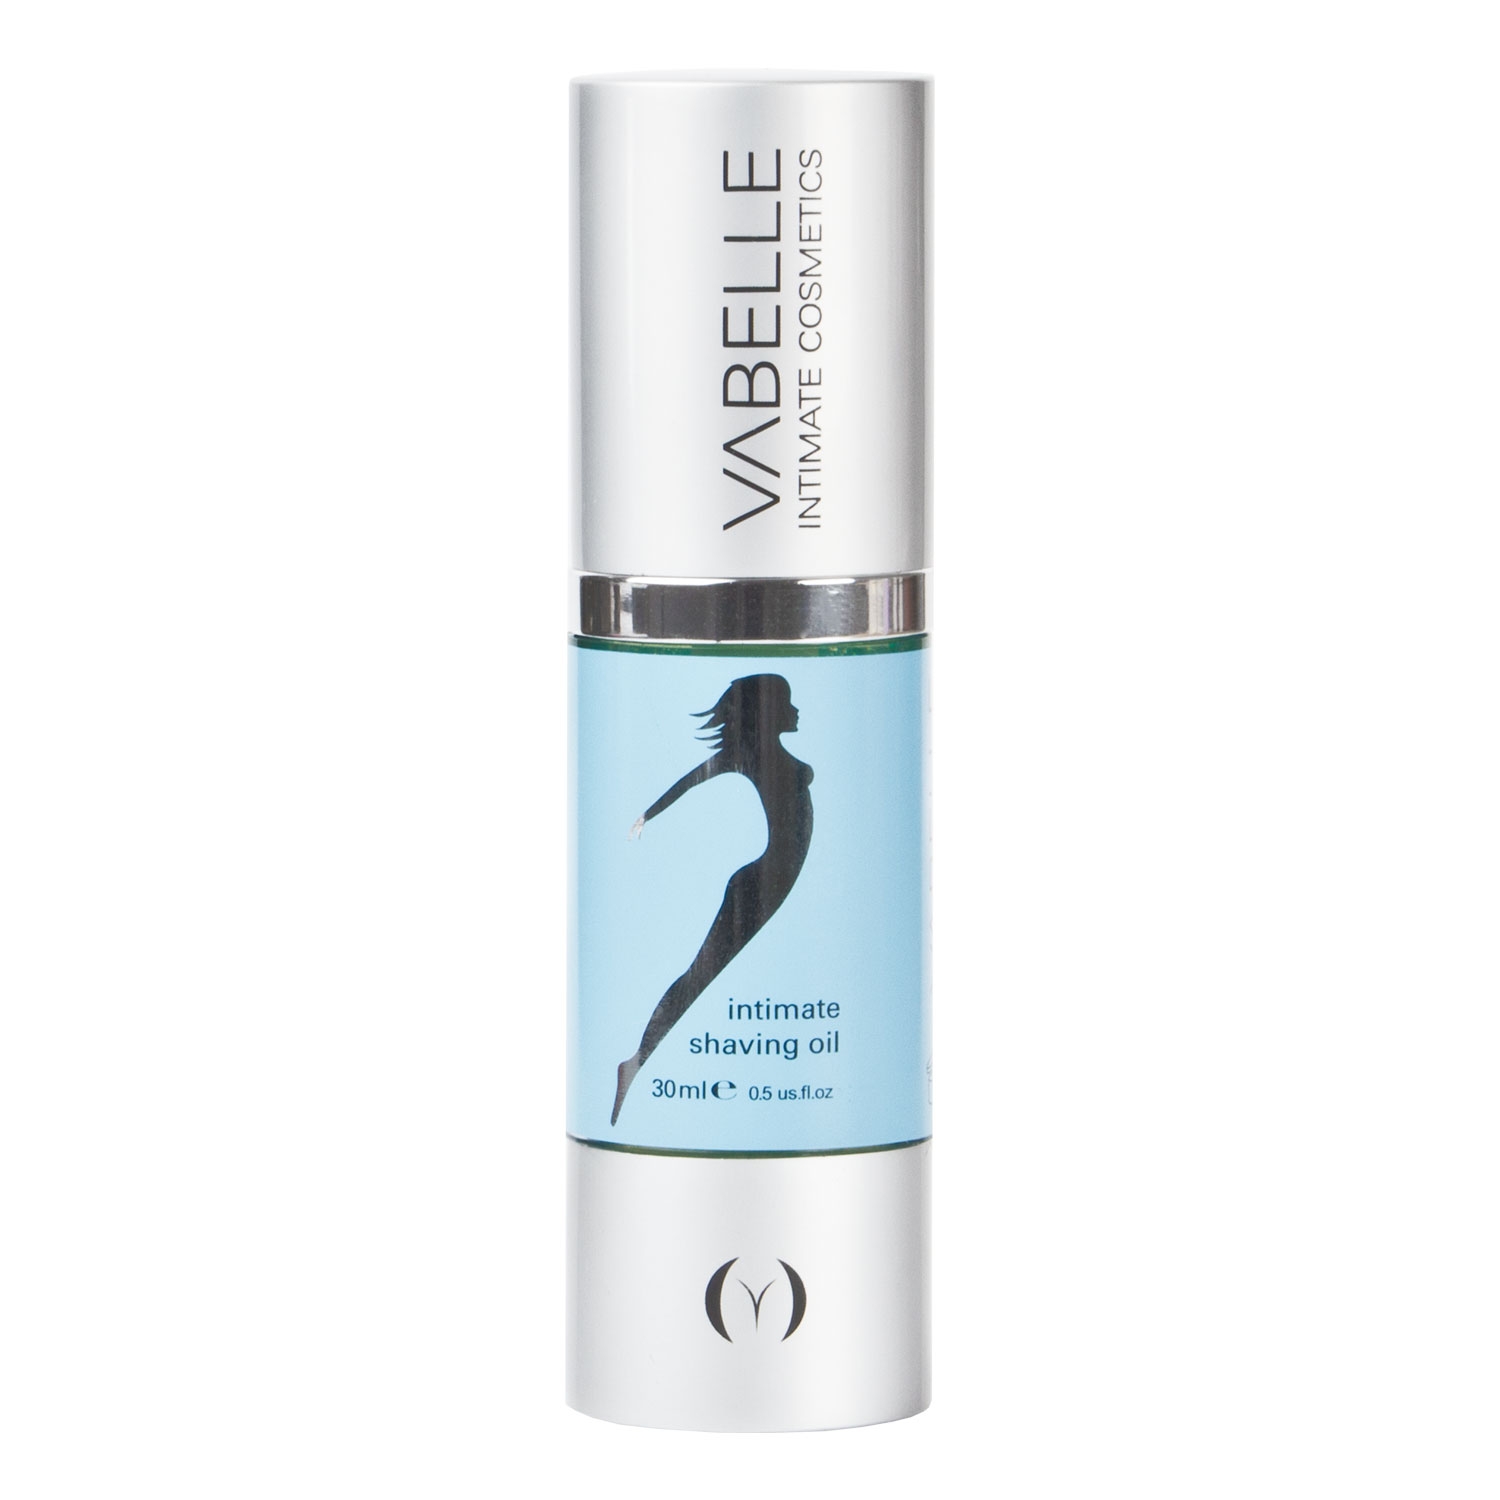 Produktbild von Vabelle - Intimate Shaving Oil